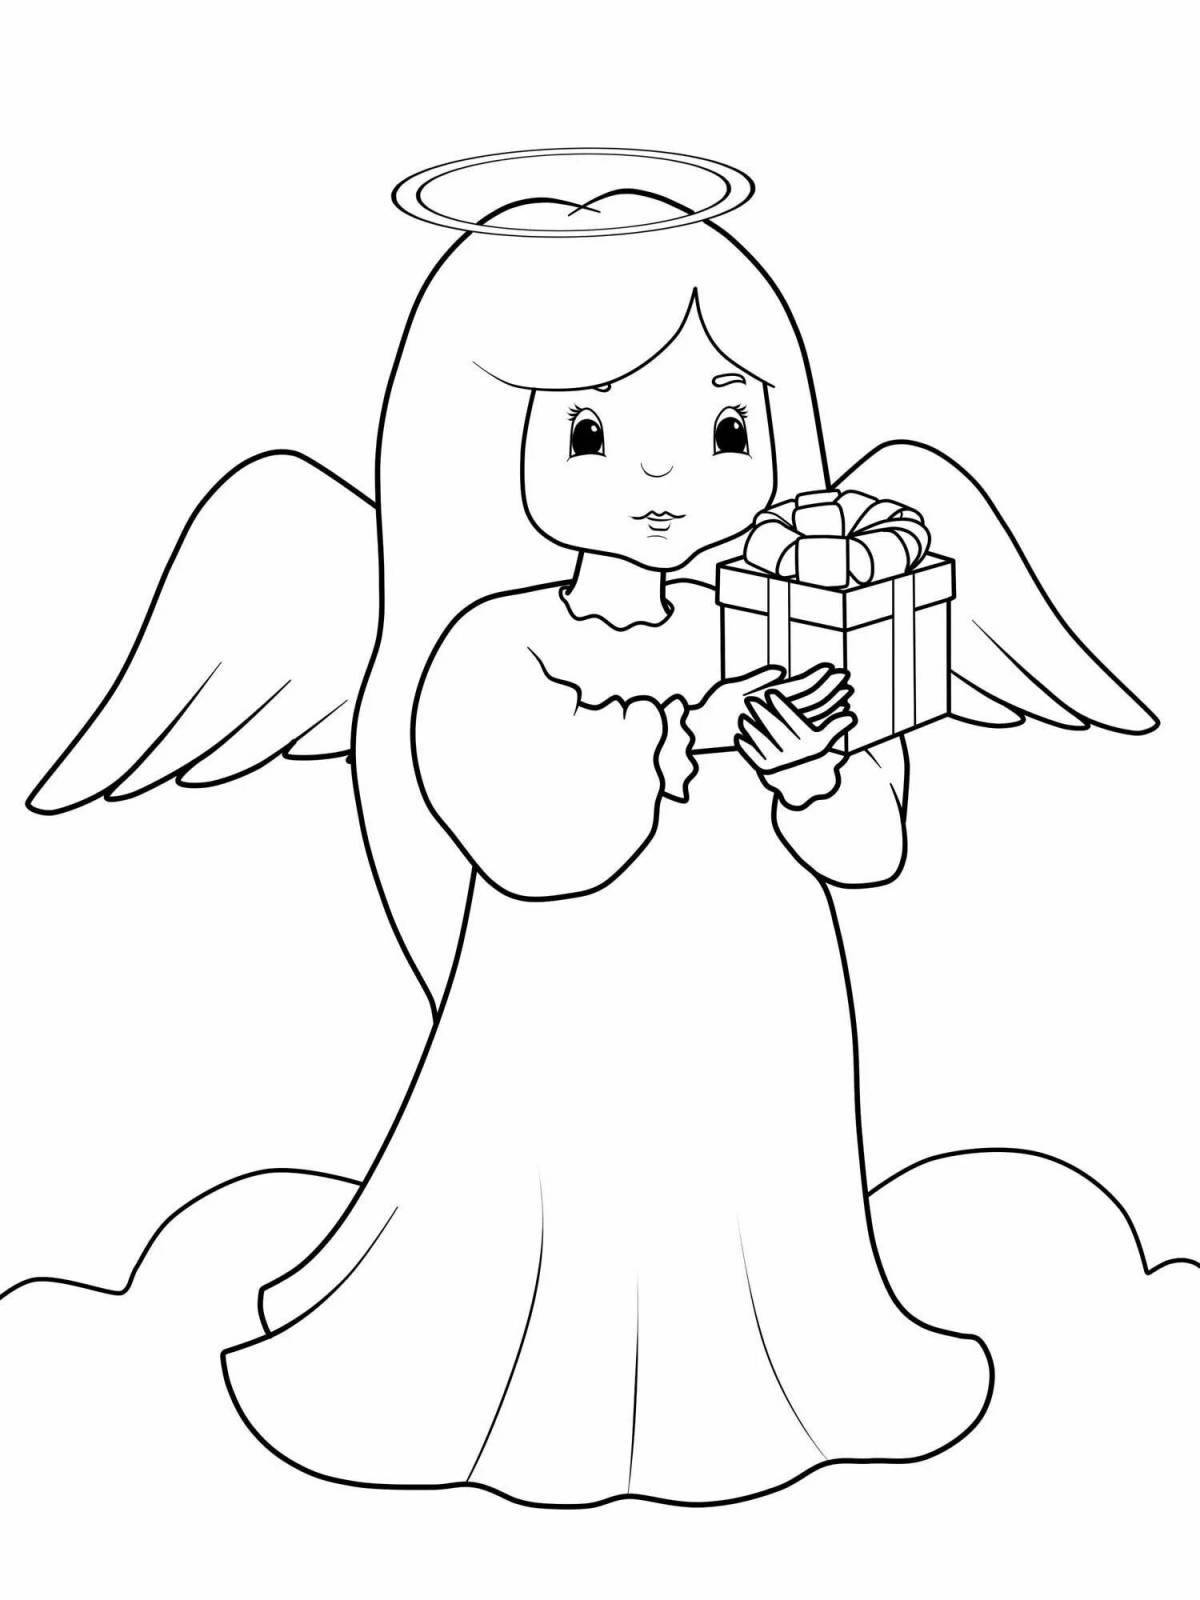 Милый ангел-раскраска для детей